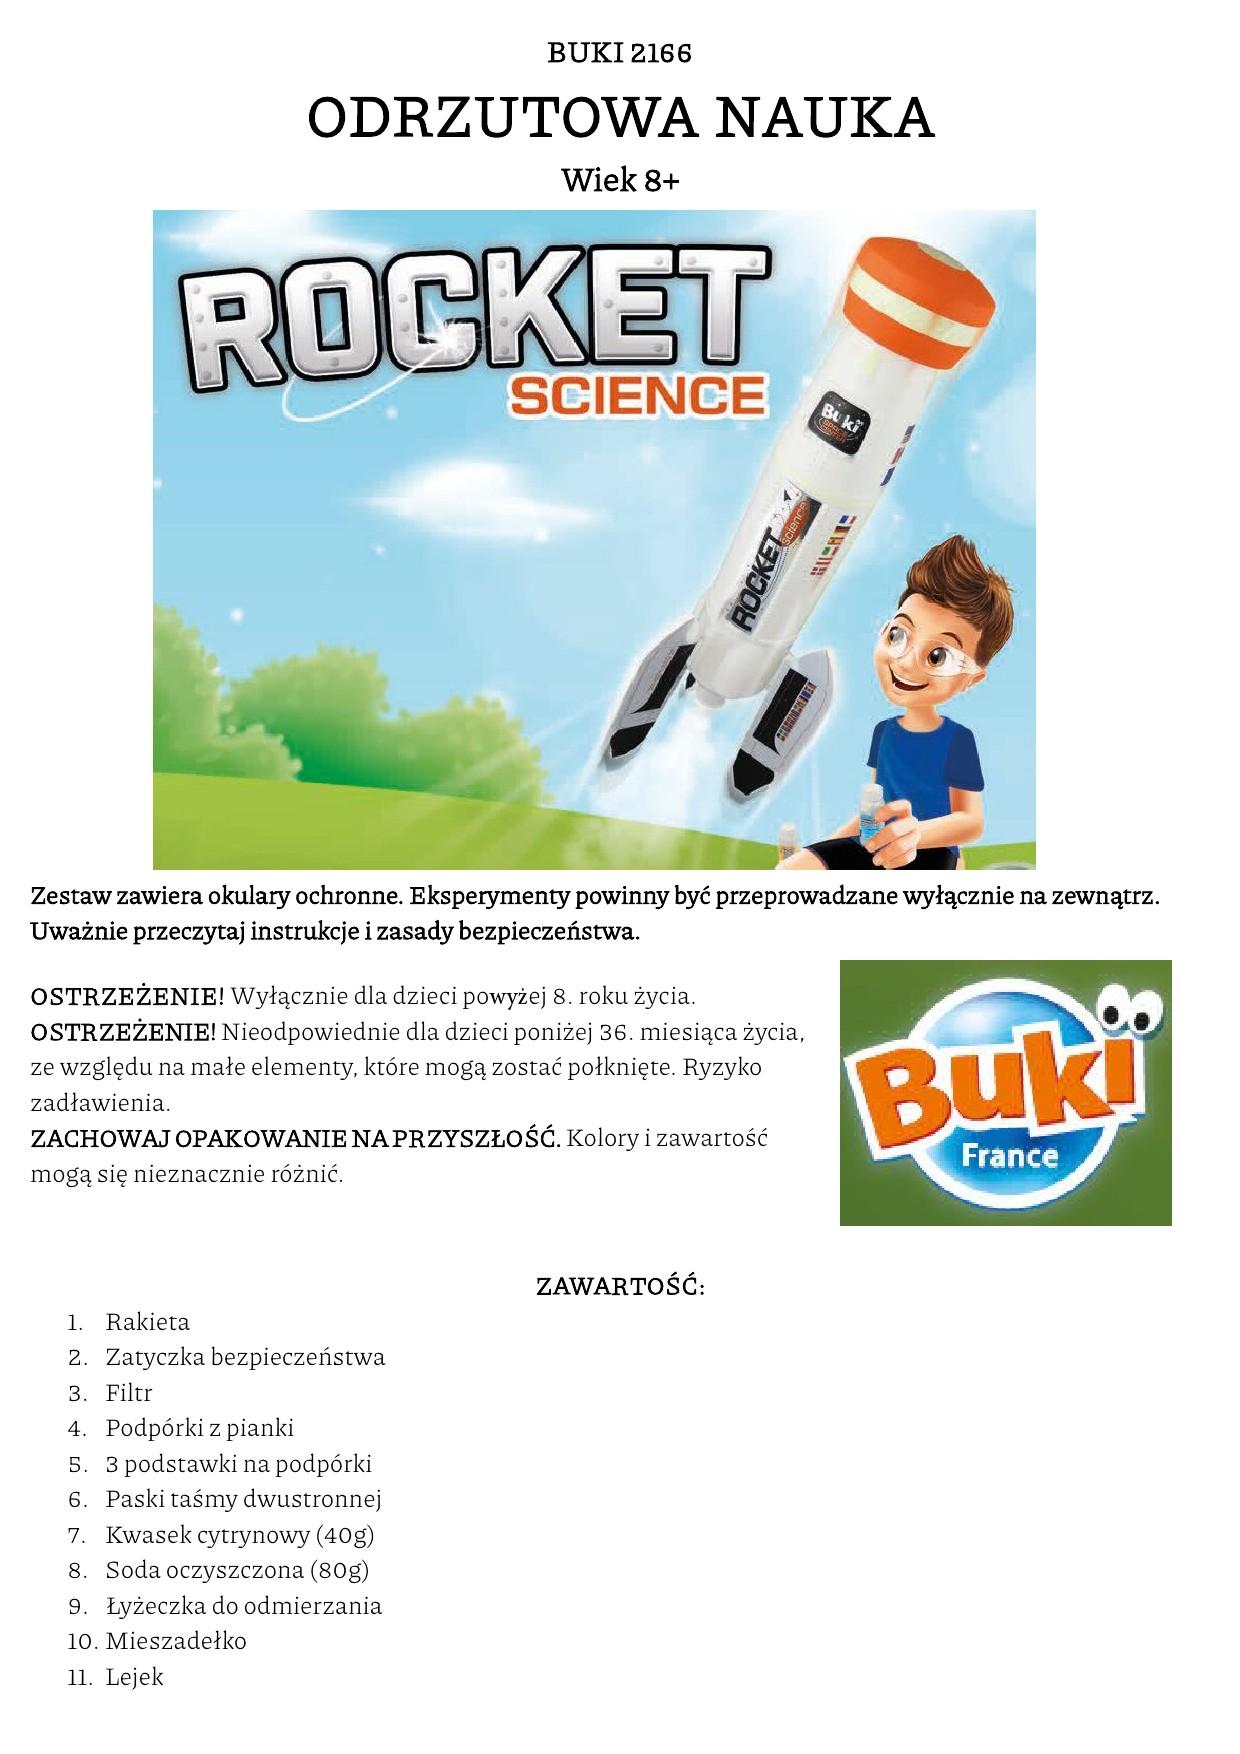 Buki - bezpieczna nauka - rakieta - Sklep online Moi Mili